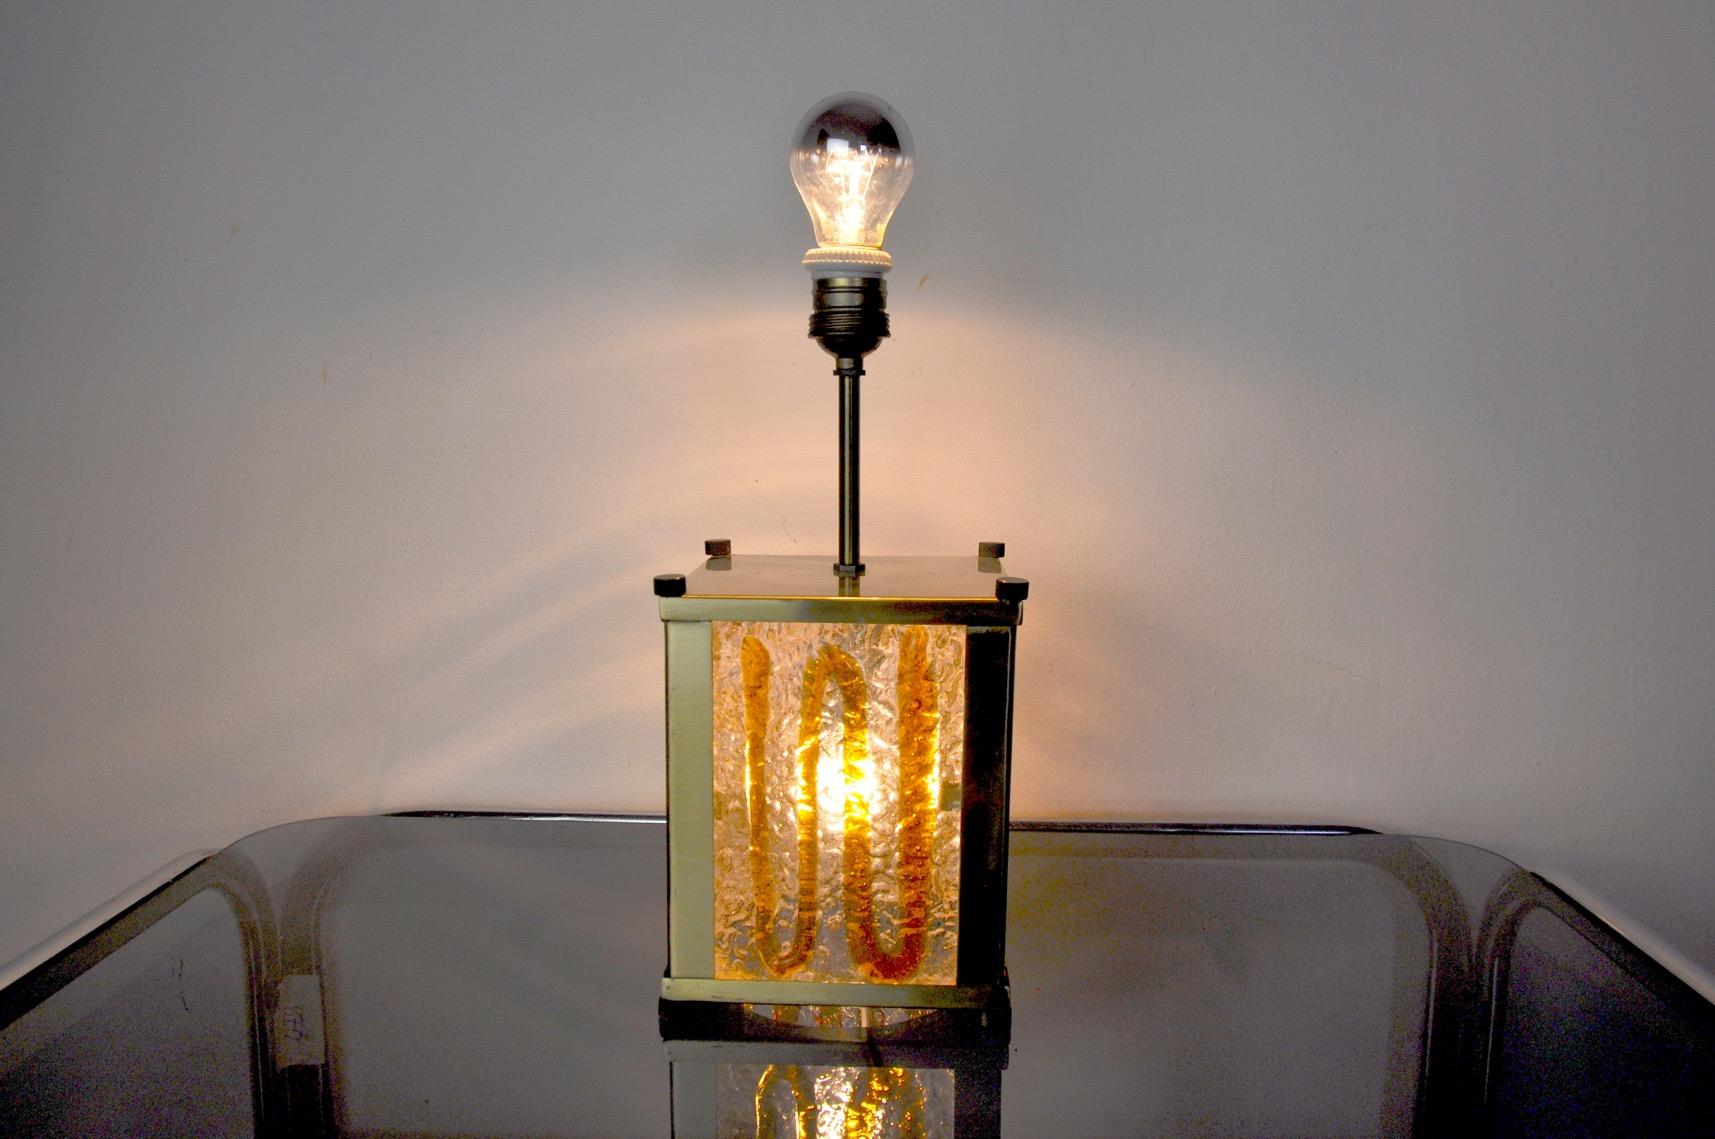 Murano Mazzega Lampe entworfen und hergestellt in Italien in den 1960er Jahren. 4 Kristallplatten aus orangefarbenem mundgeblasenem Murano-Glas sind im Quadrat verteilt und werden von einer goldenen Metallstruktur getragen.

Möglichkeit zur